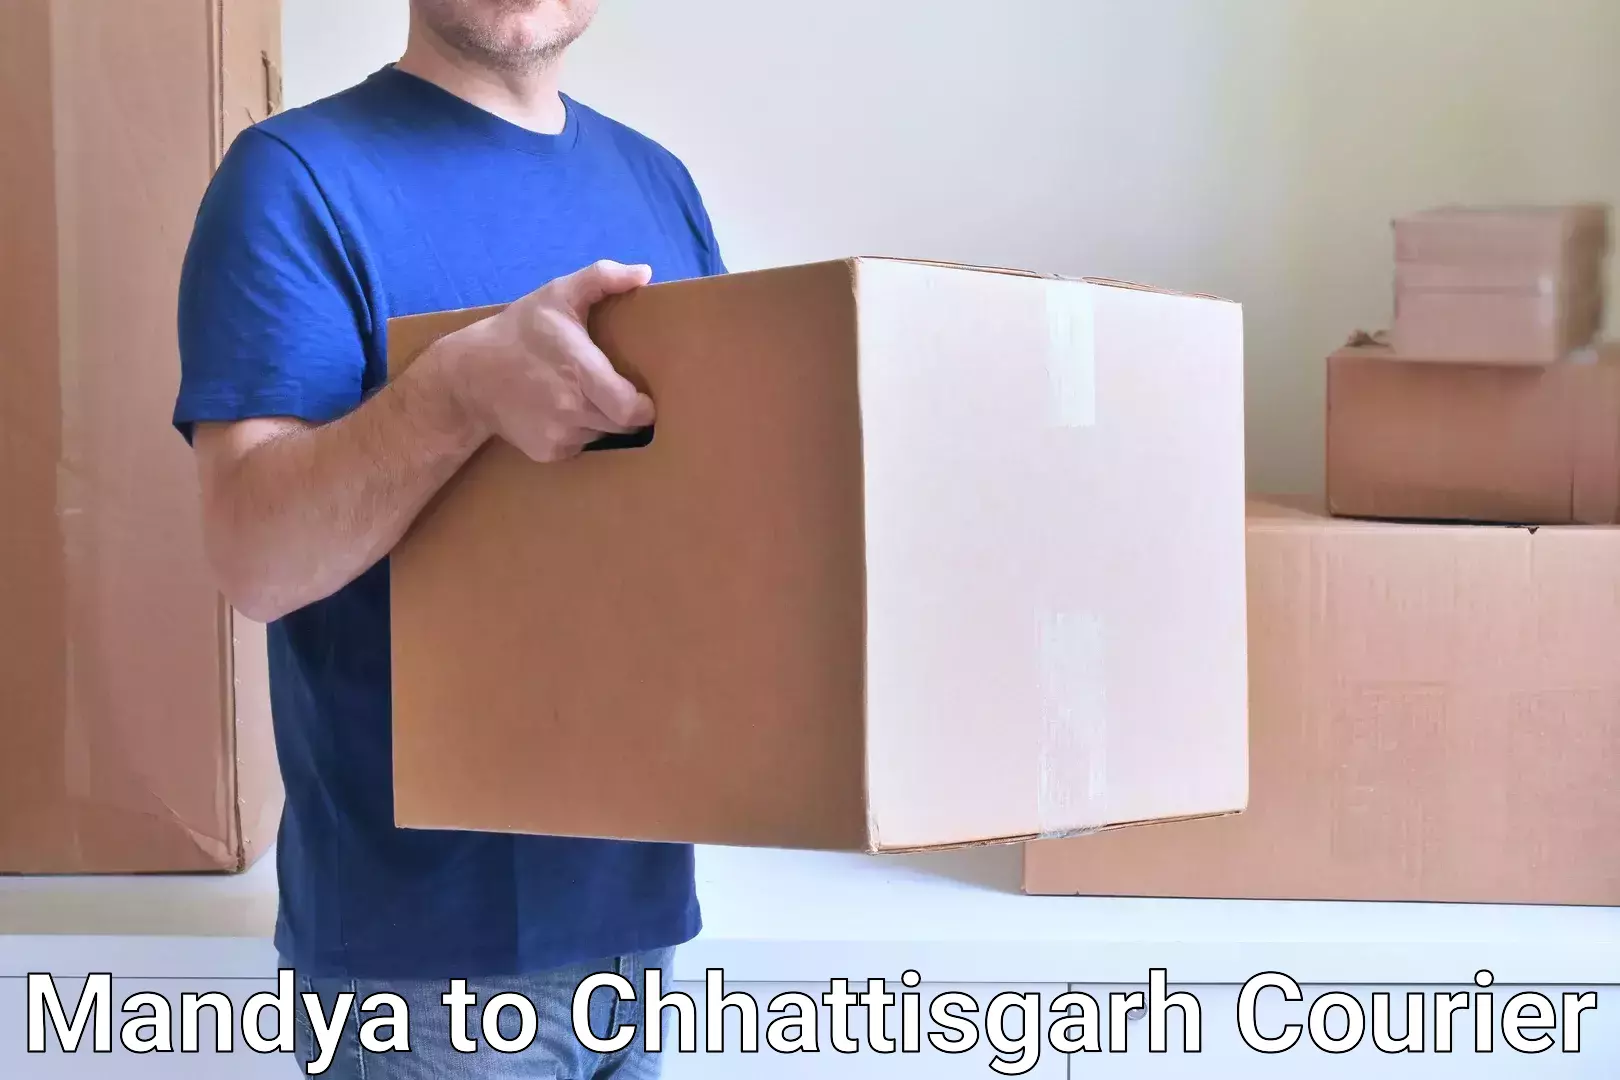 Courier service comparison Mandya to Chhattisgarh